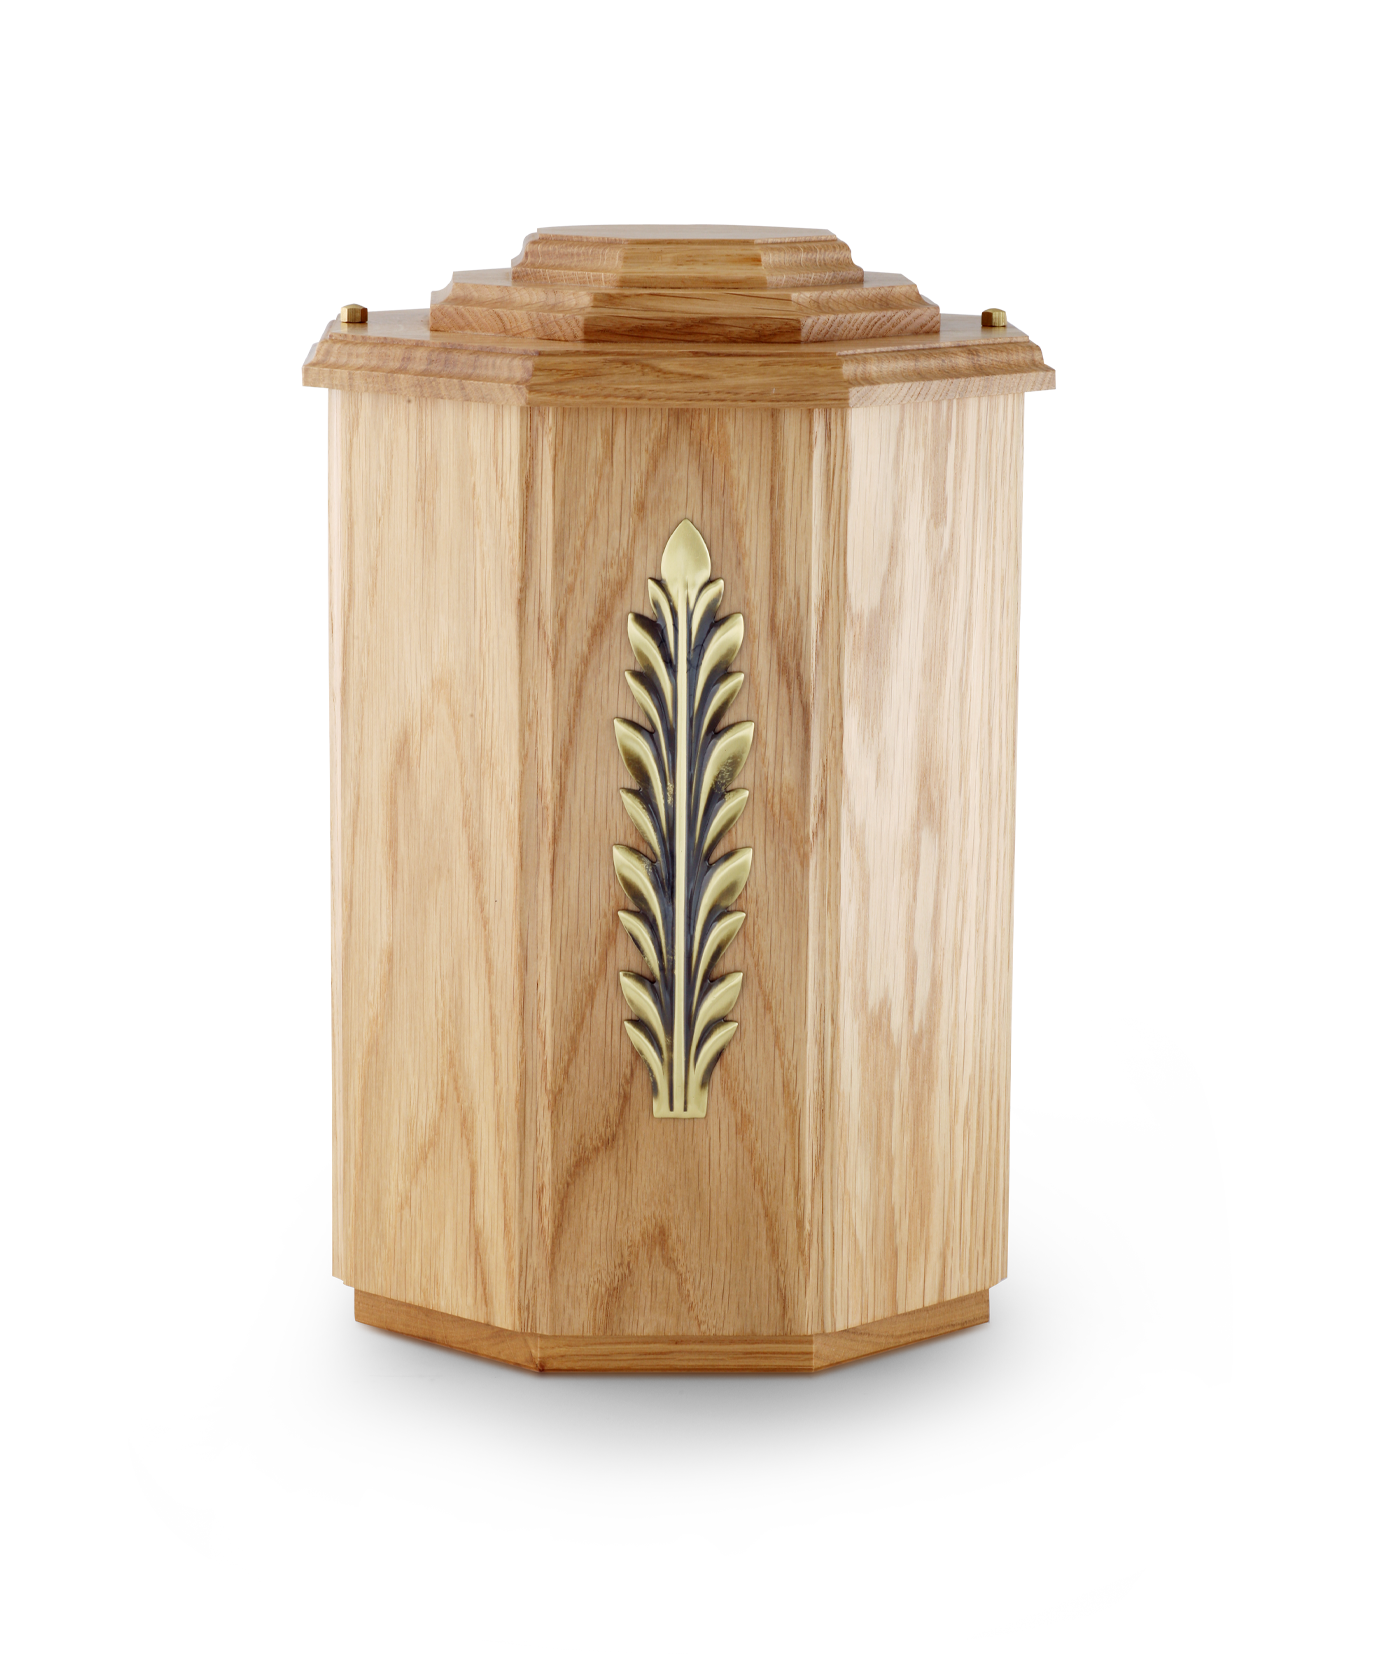 Völsing urn octagonal wood